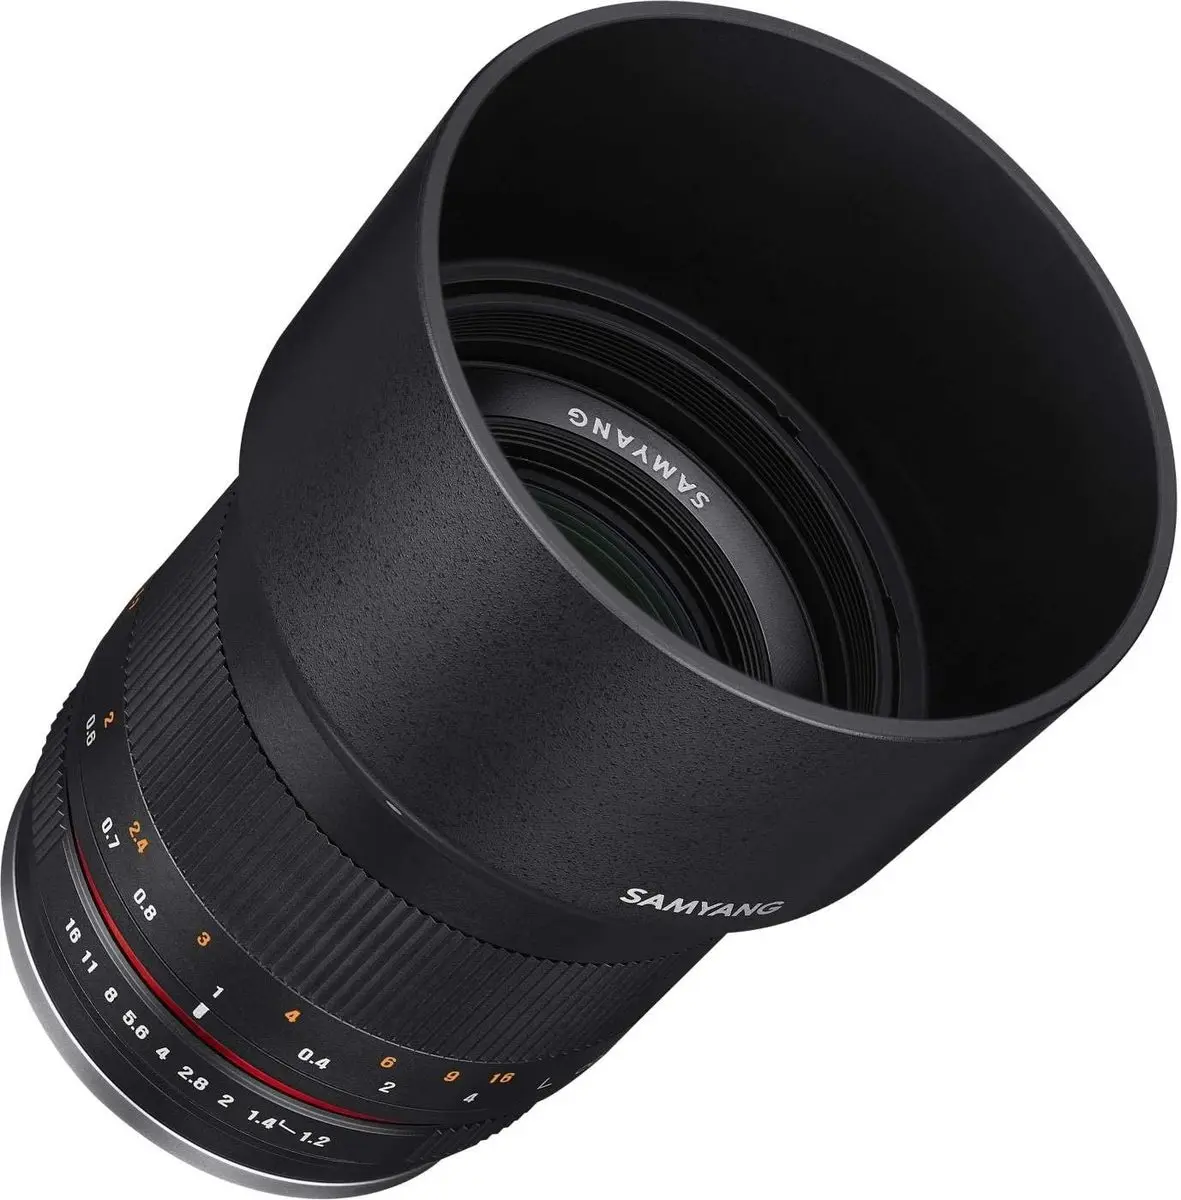 2. Samyang 50mm f/1.2 AS UMC CS (Sony E) Lens